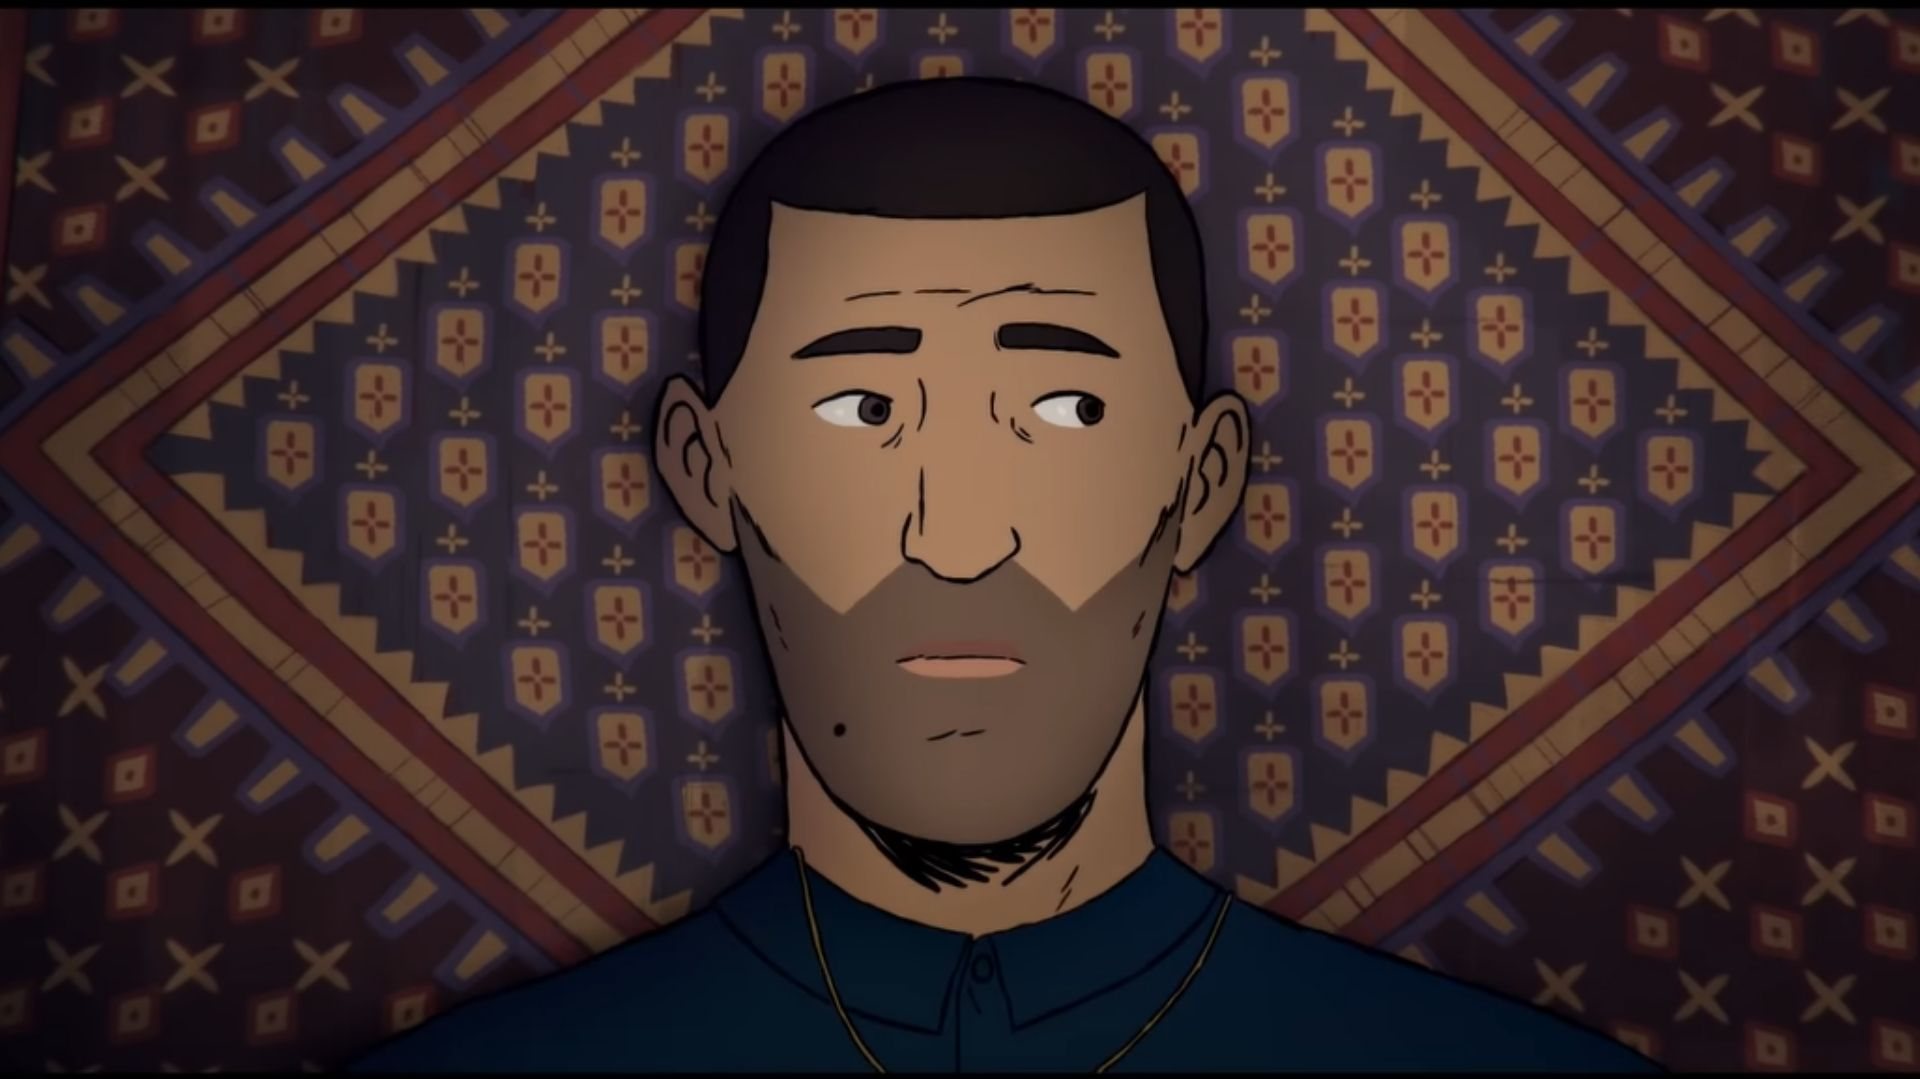 Uma animação realista e autobiográfica na linha de &quot;Persépolis&quot; e &quot;A Valsa com Bashir&quot;